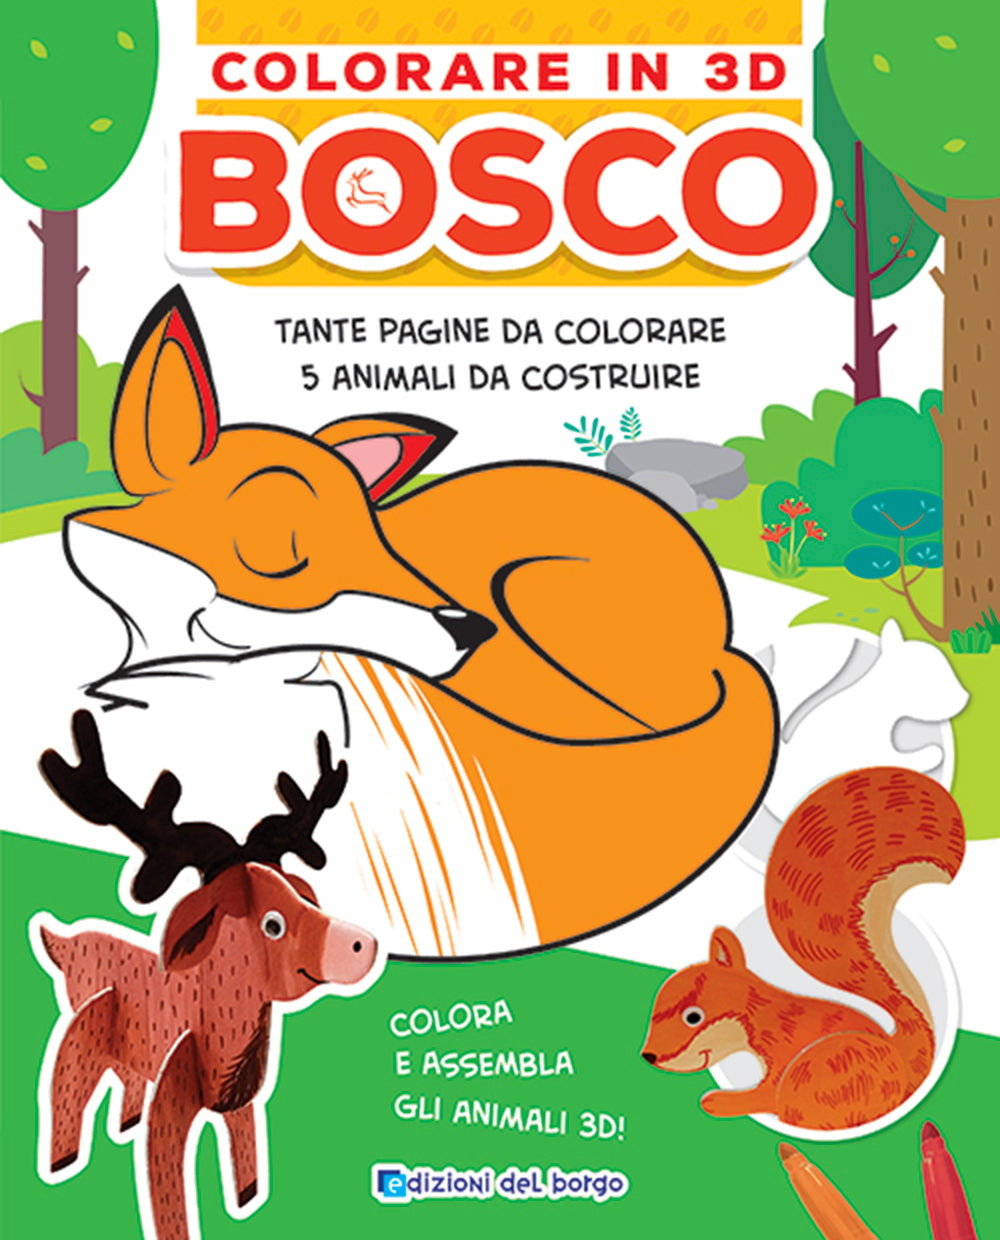 Colorare in 3D Bosco. Tante pagine da colorare - 5 soggetti da costruire